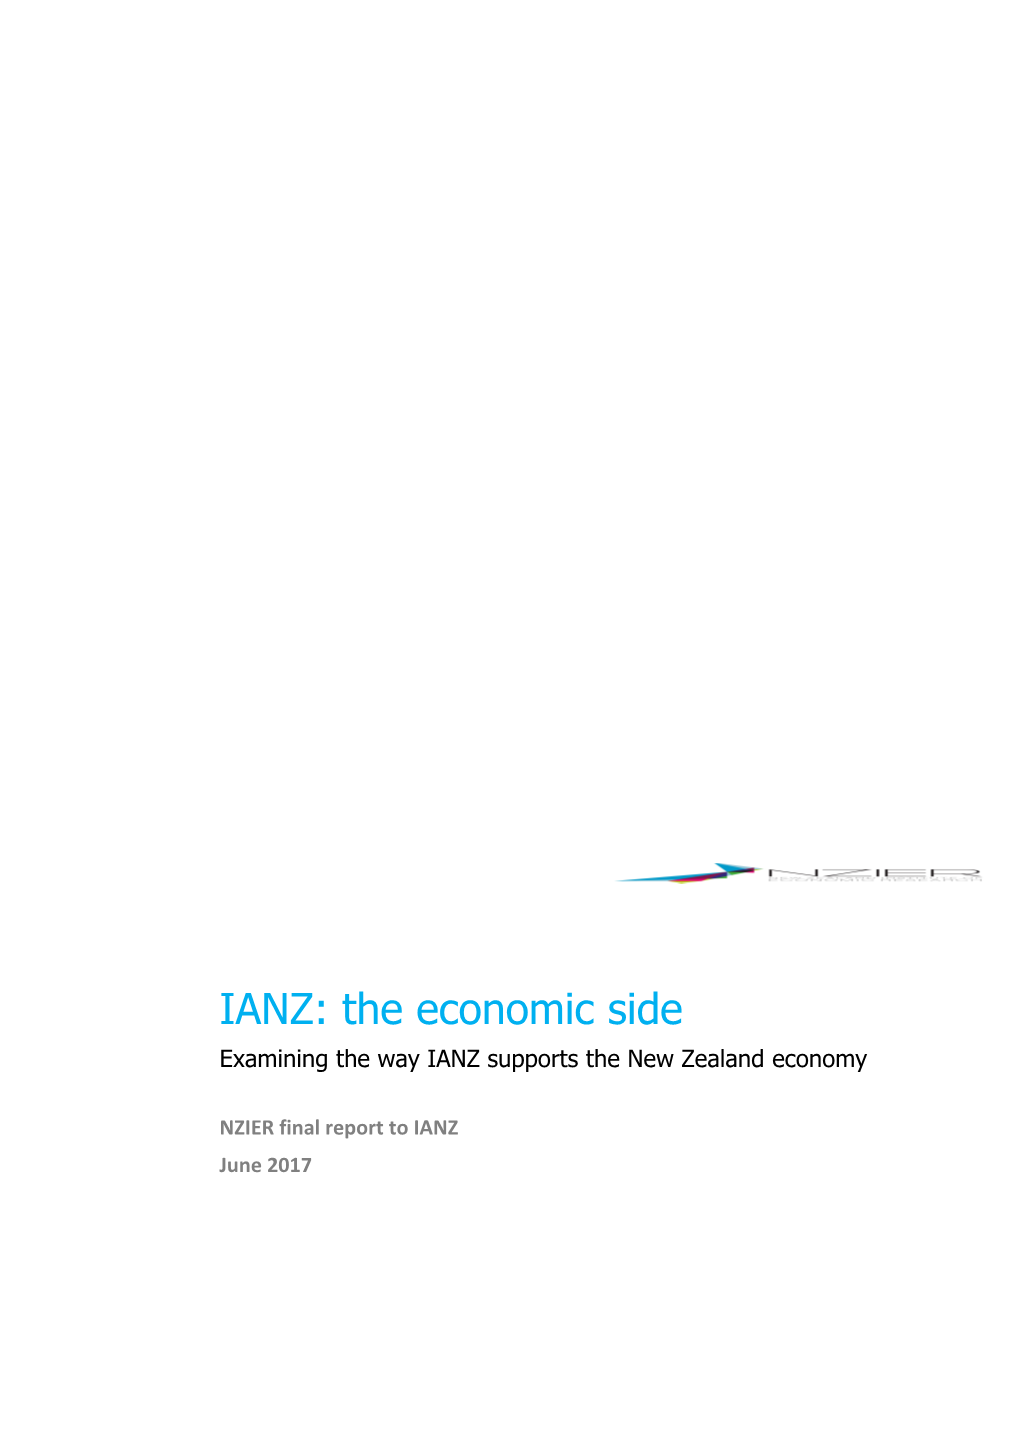 Examining the Way IANZ Supports the New Zealand Economy